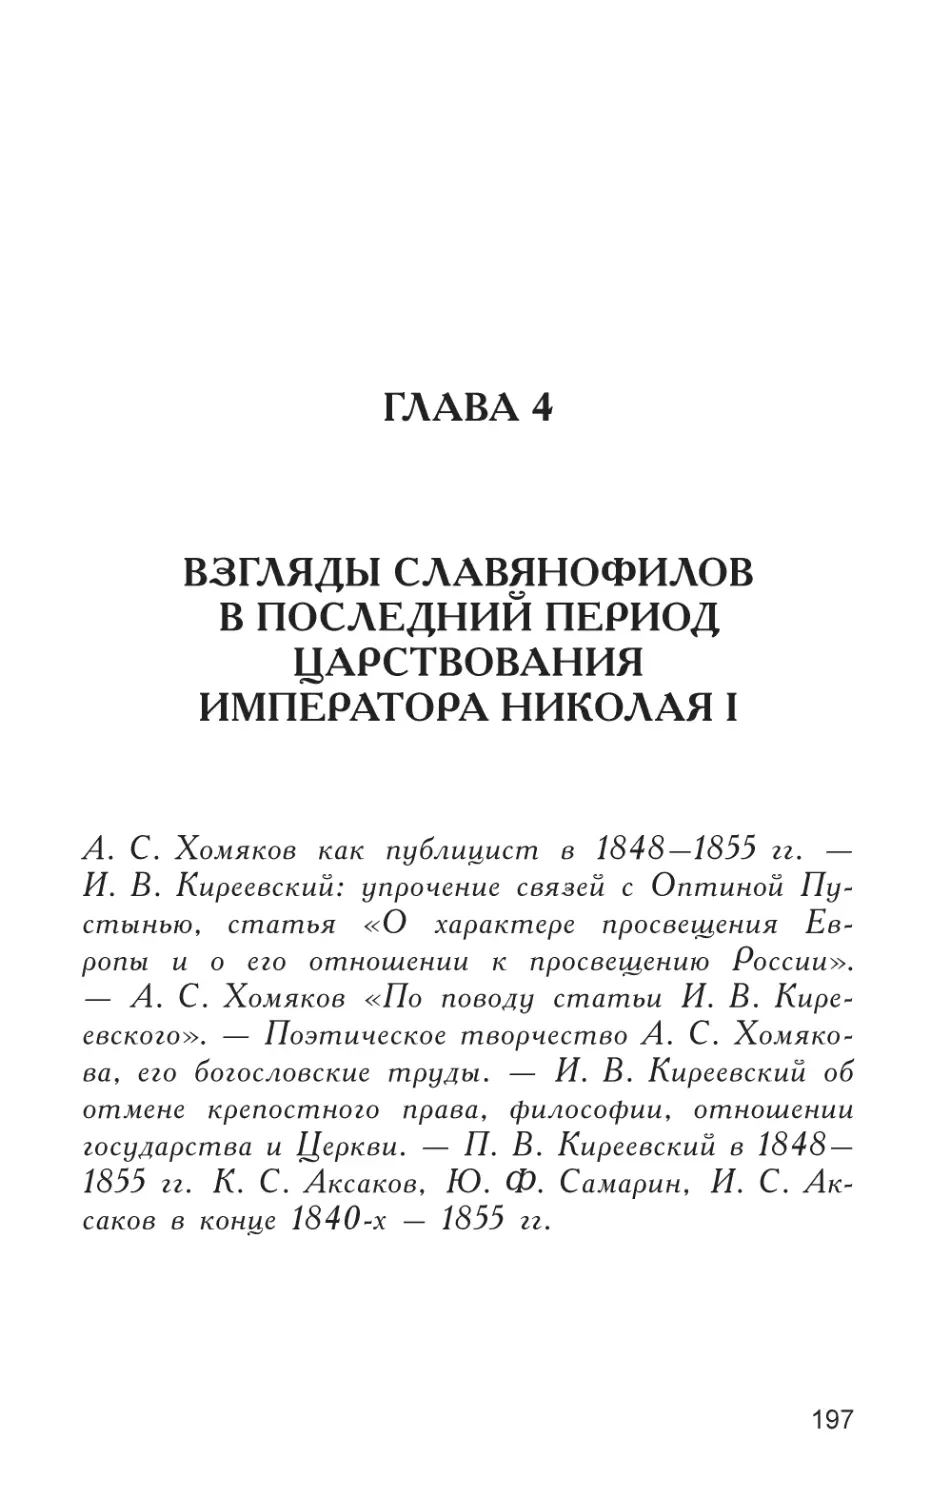 Глава 4
Взгляды славянофилов в последний период царствования Императора Николая I